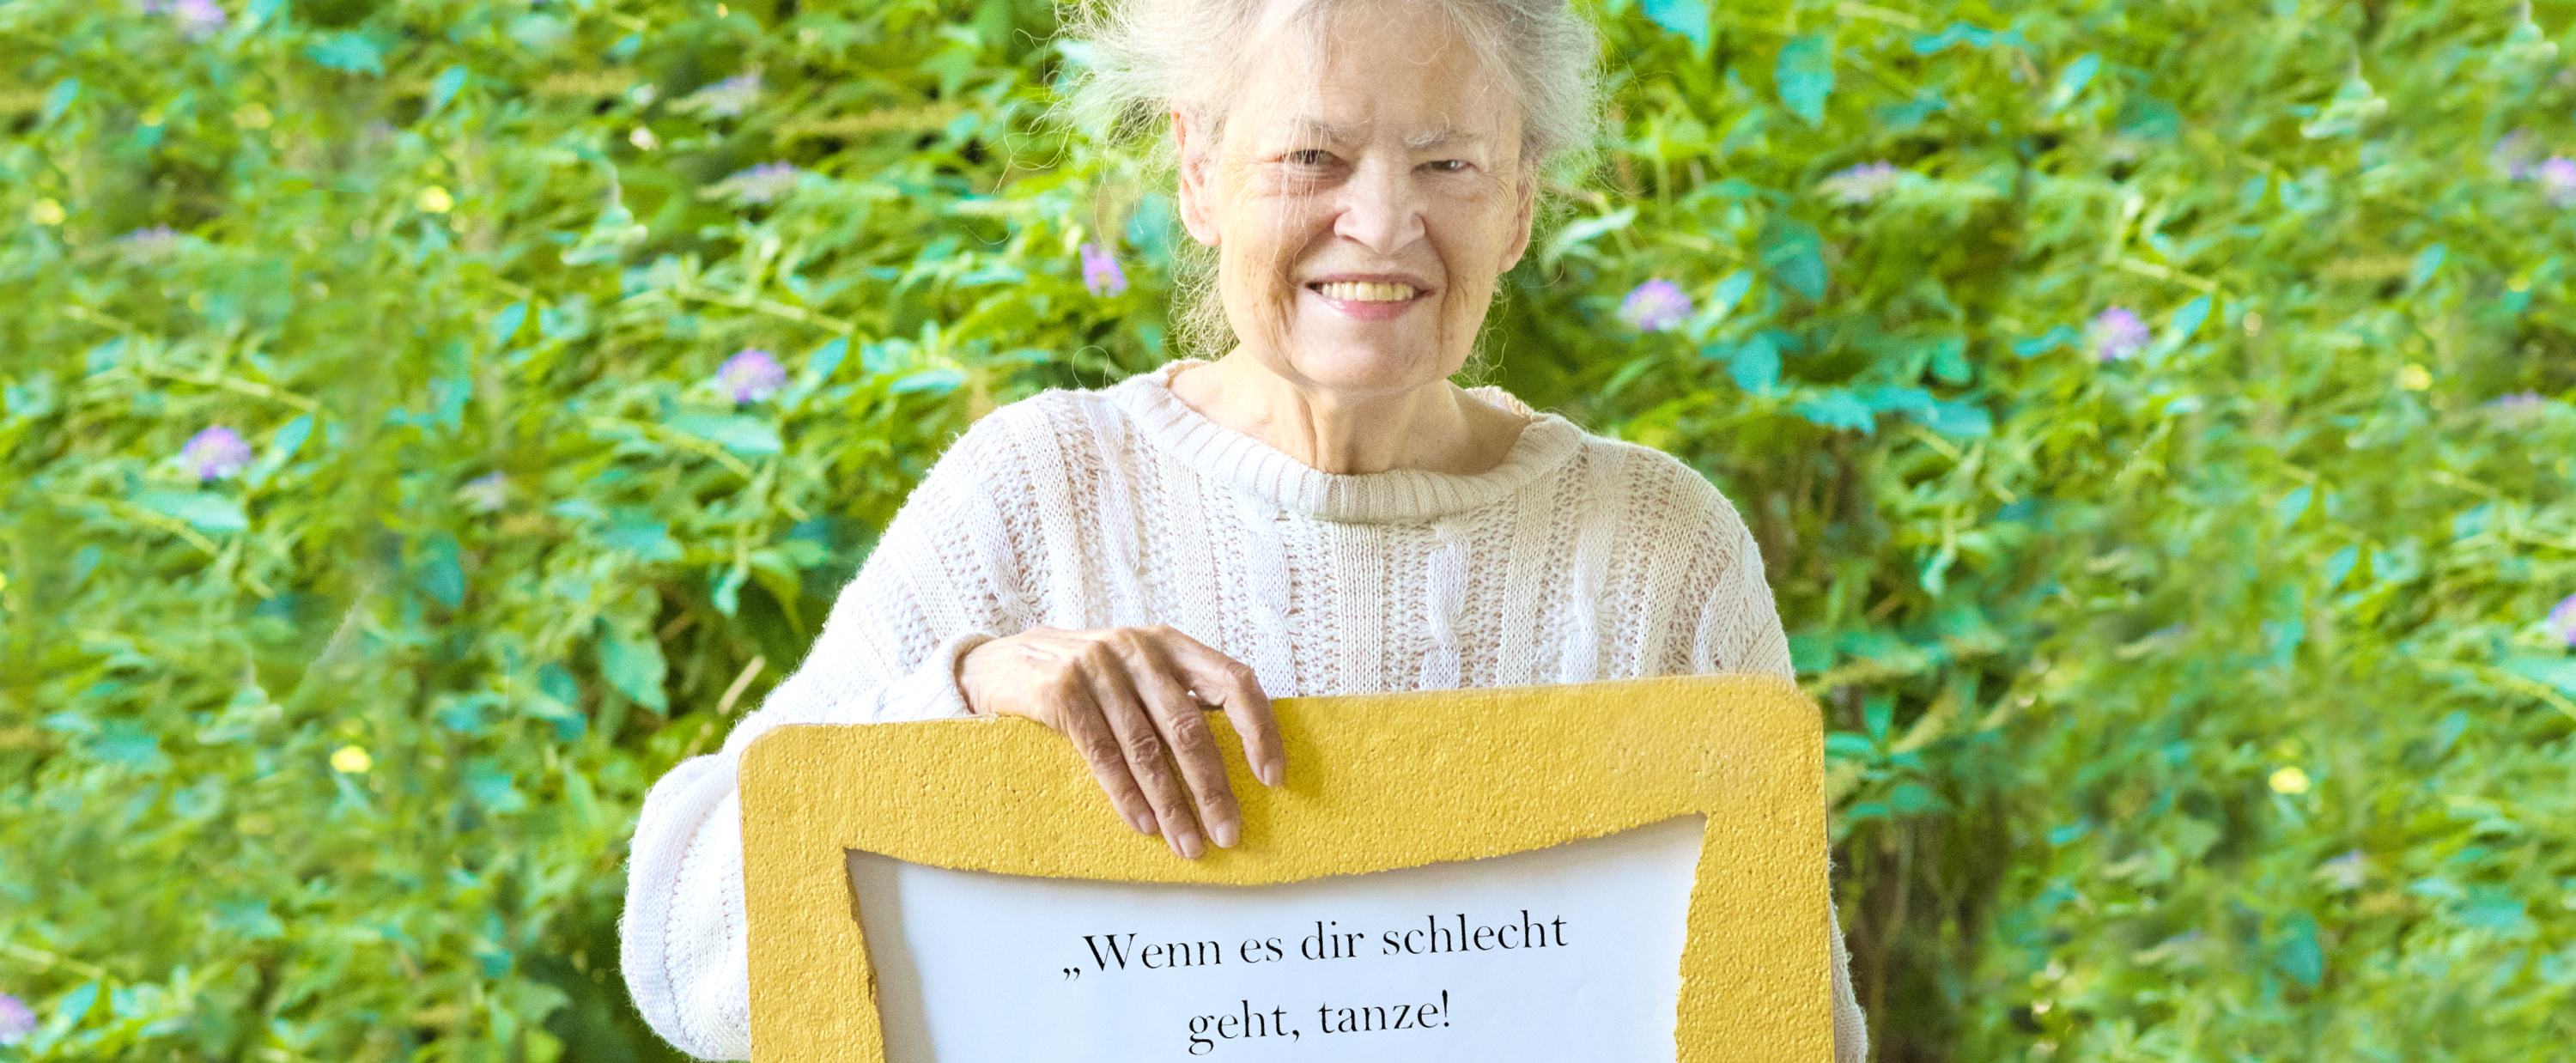 Ältere Frau hält ein gelbes Schild in der Hand mit dem Spruch: Mein Rat fürs Leben. Wenn es dir schlecht geht, tanze! Dann geht es dir wieder besser.